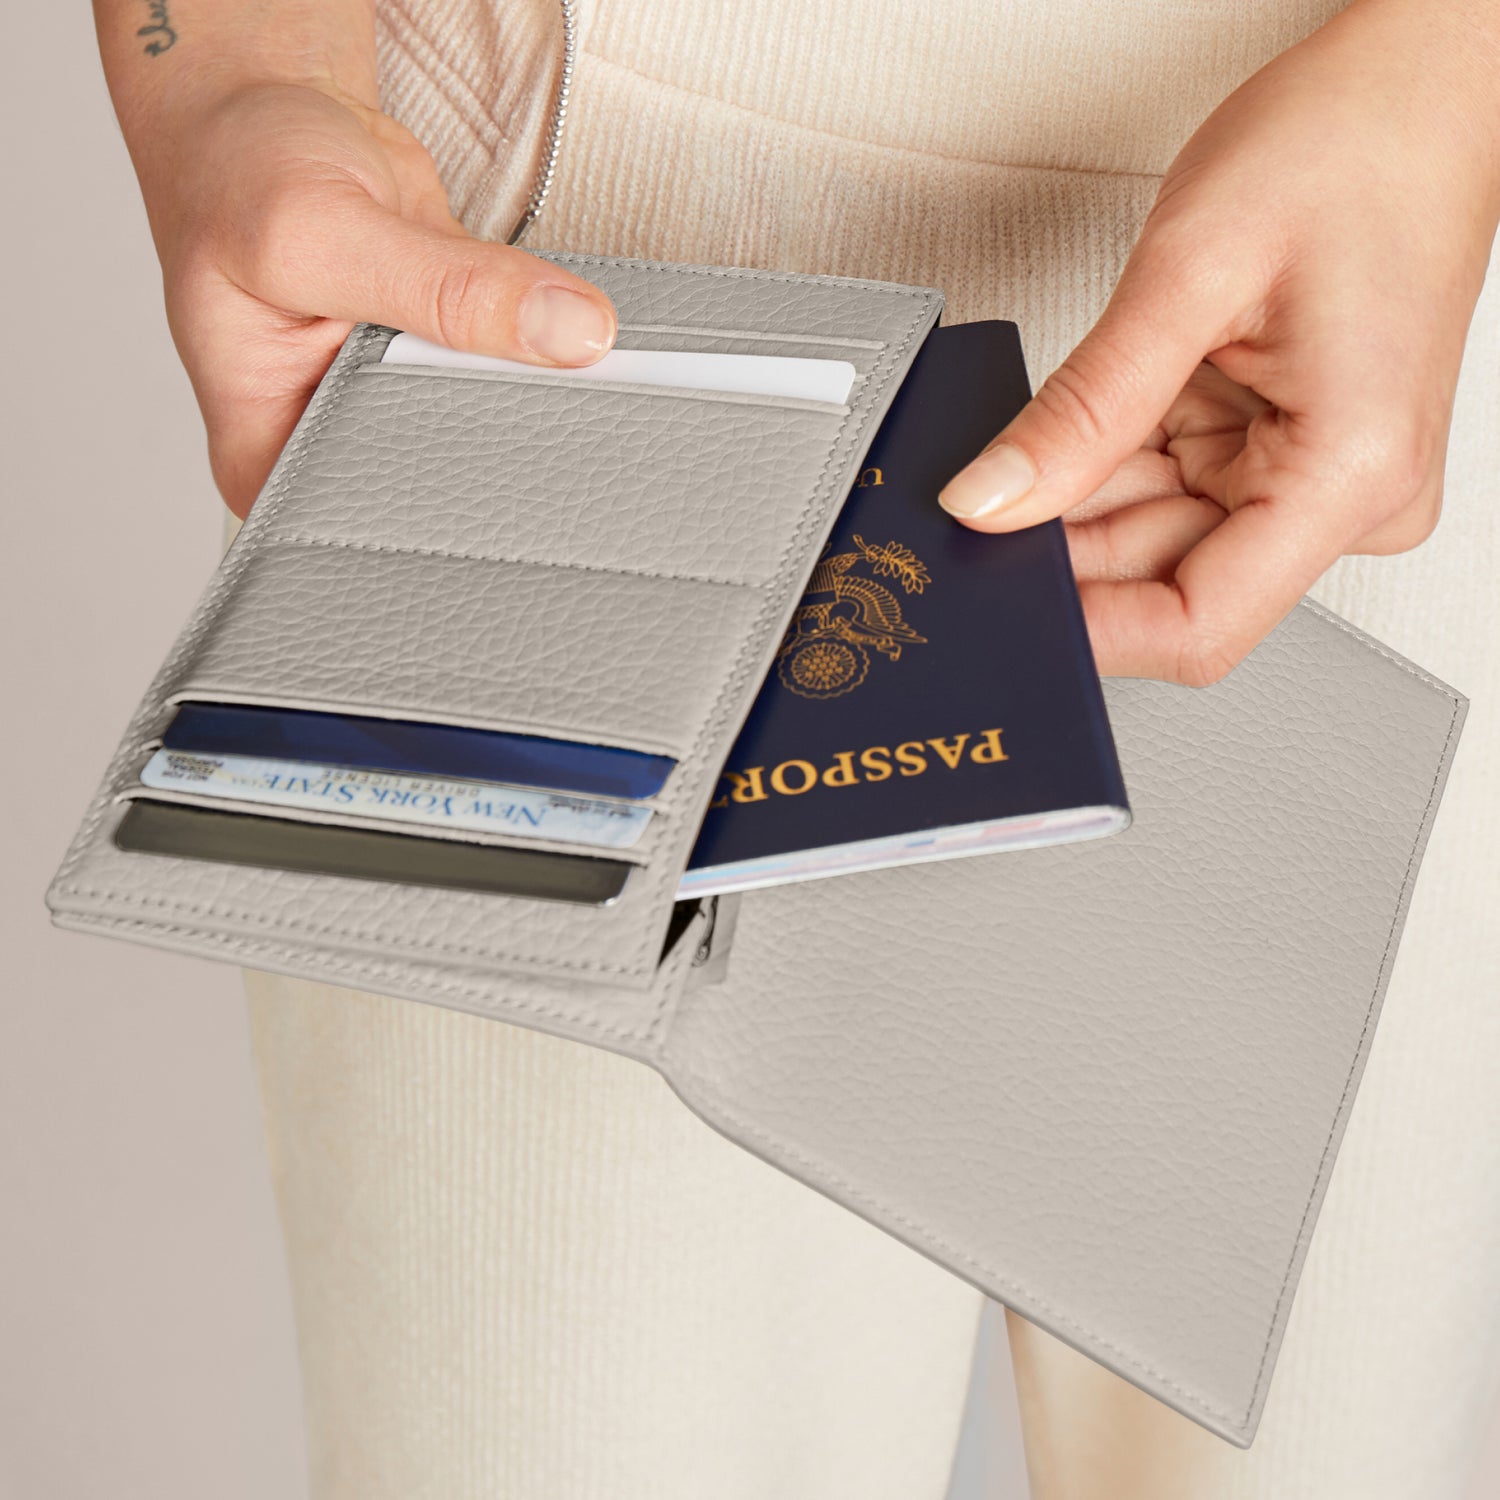 Shop authentic Louis Vuitton Monogram Passport Cover at revogue